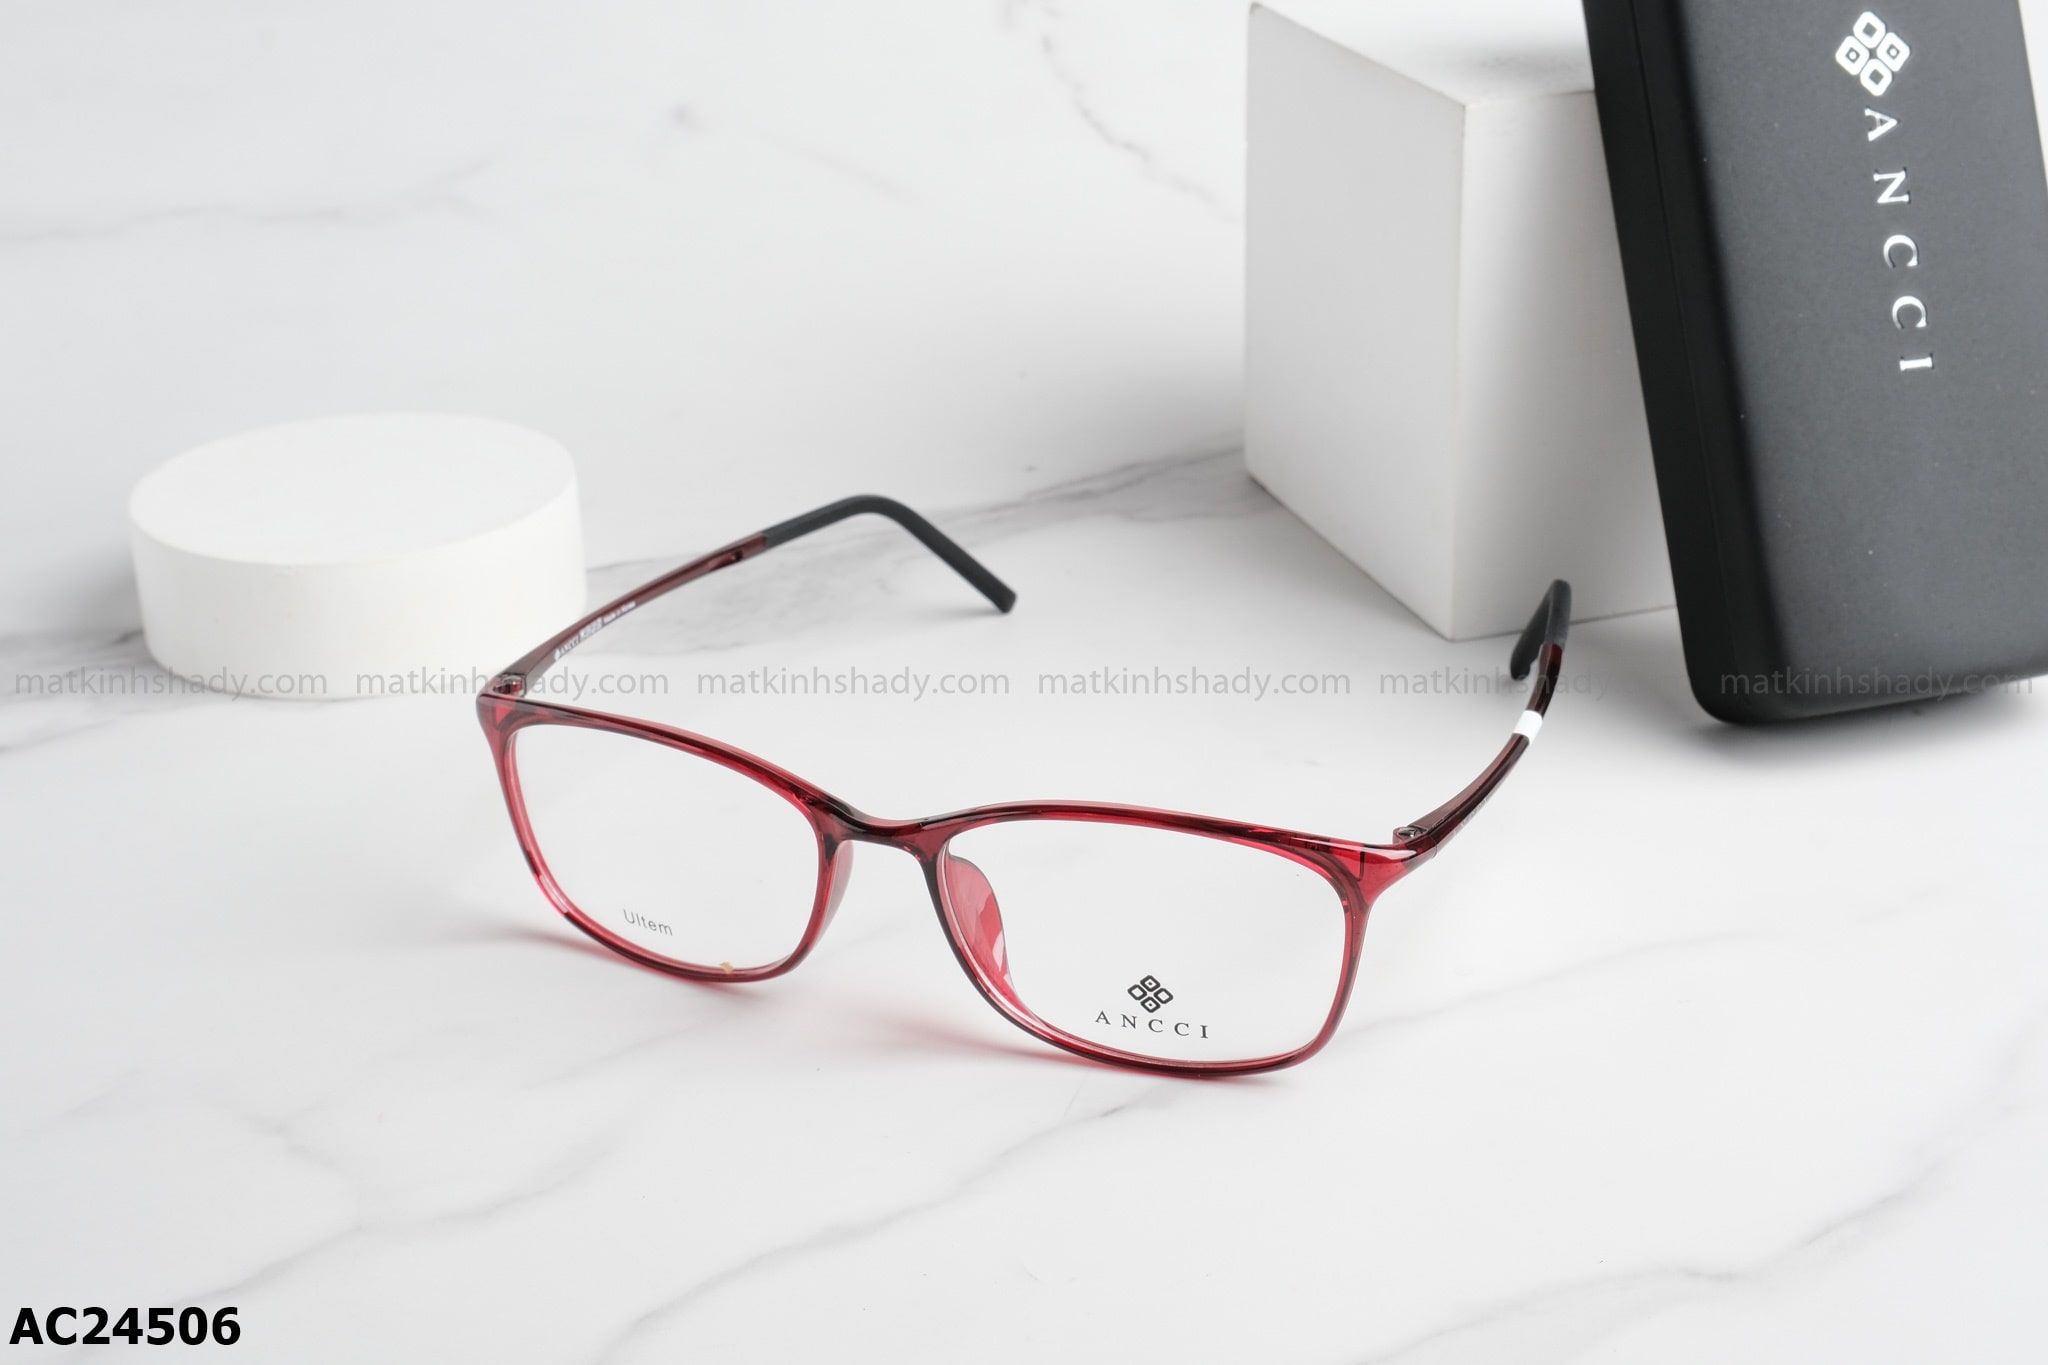  ANCCI Eyewear - Glasses - AC24506 